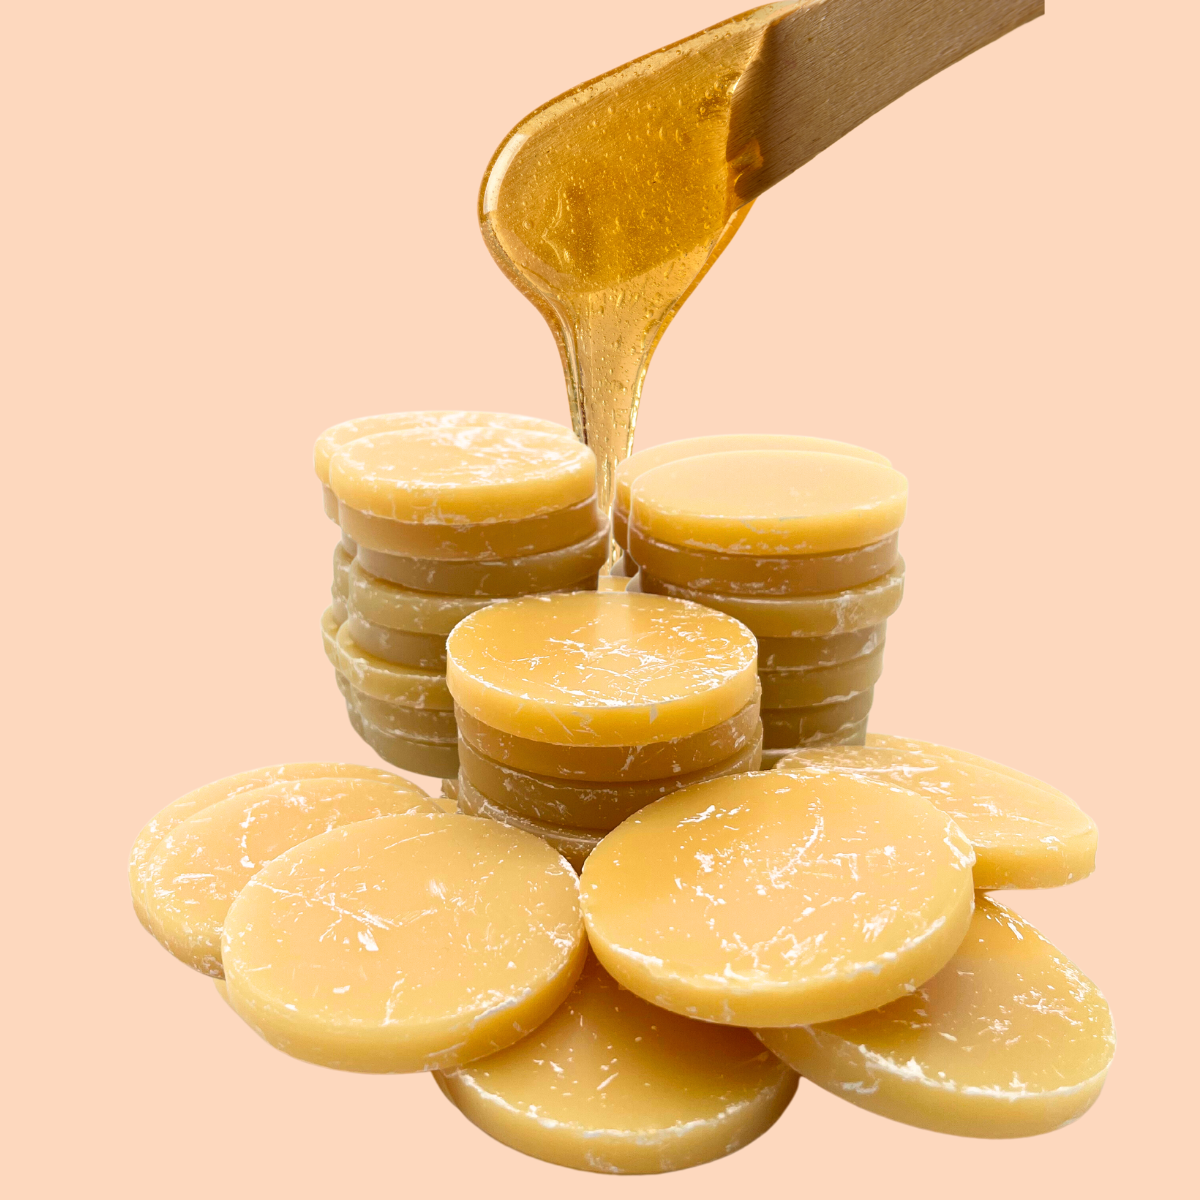 Depilcompany Hard Wax Honey – Professional High-Yield Hard Wax, 2.2 lbs (1 UND)